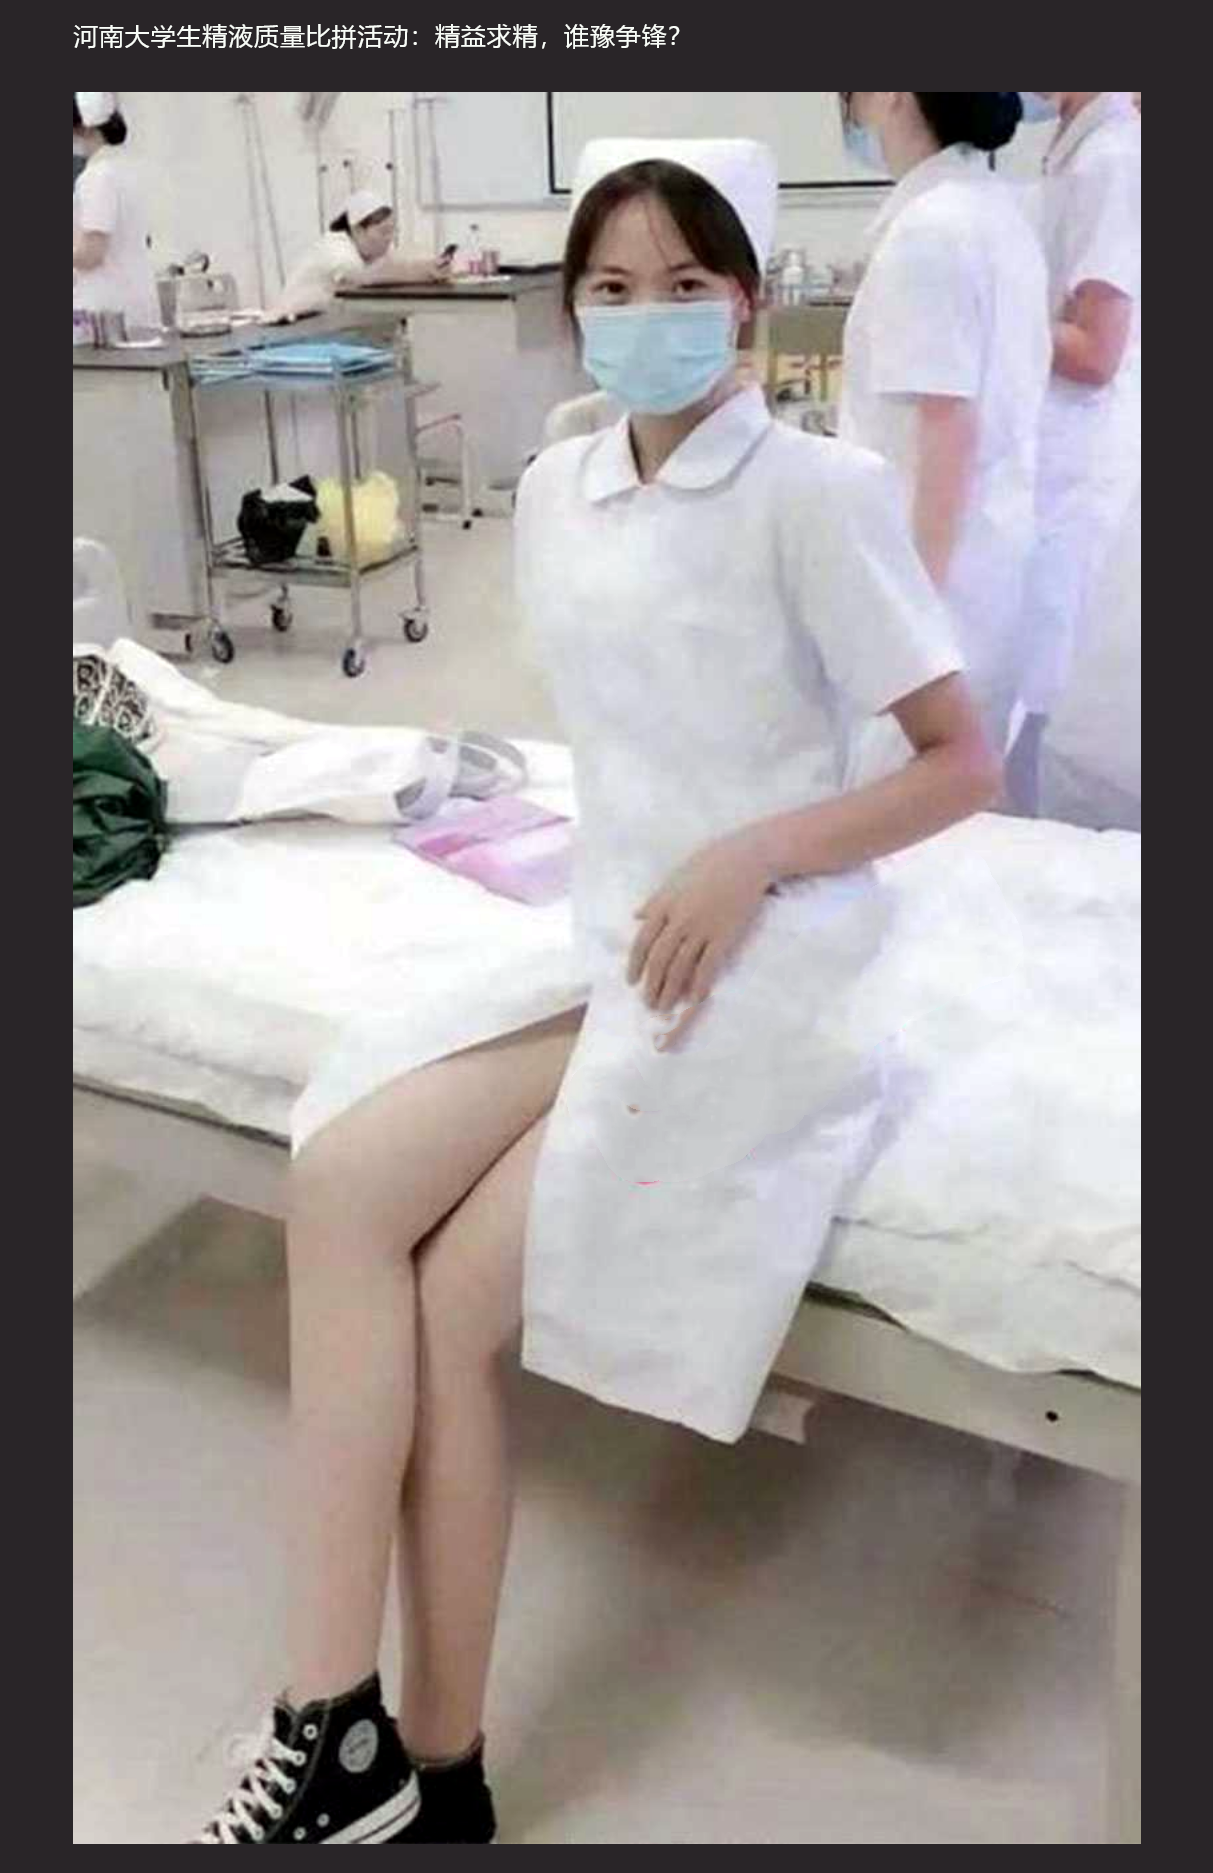 河南省人类精子库宣布将举行为期 50 天的大学生质量精液大比拼，护士帮忙口交、手打装入容器？